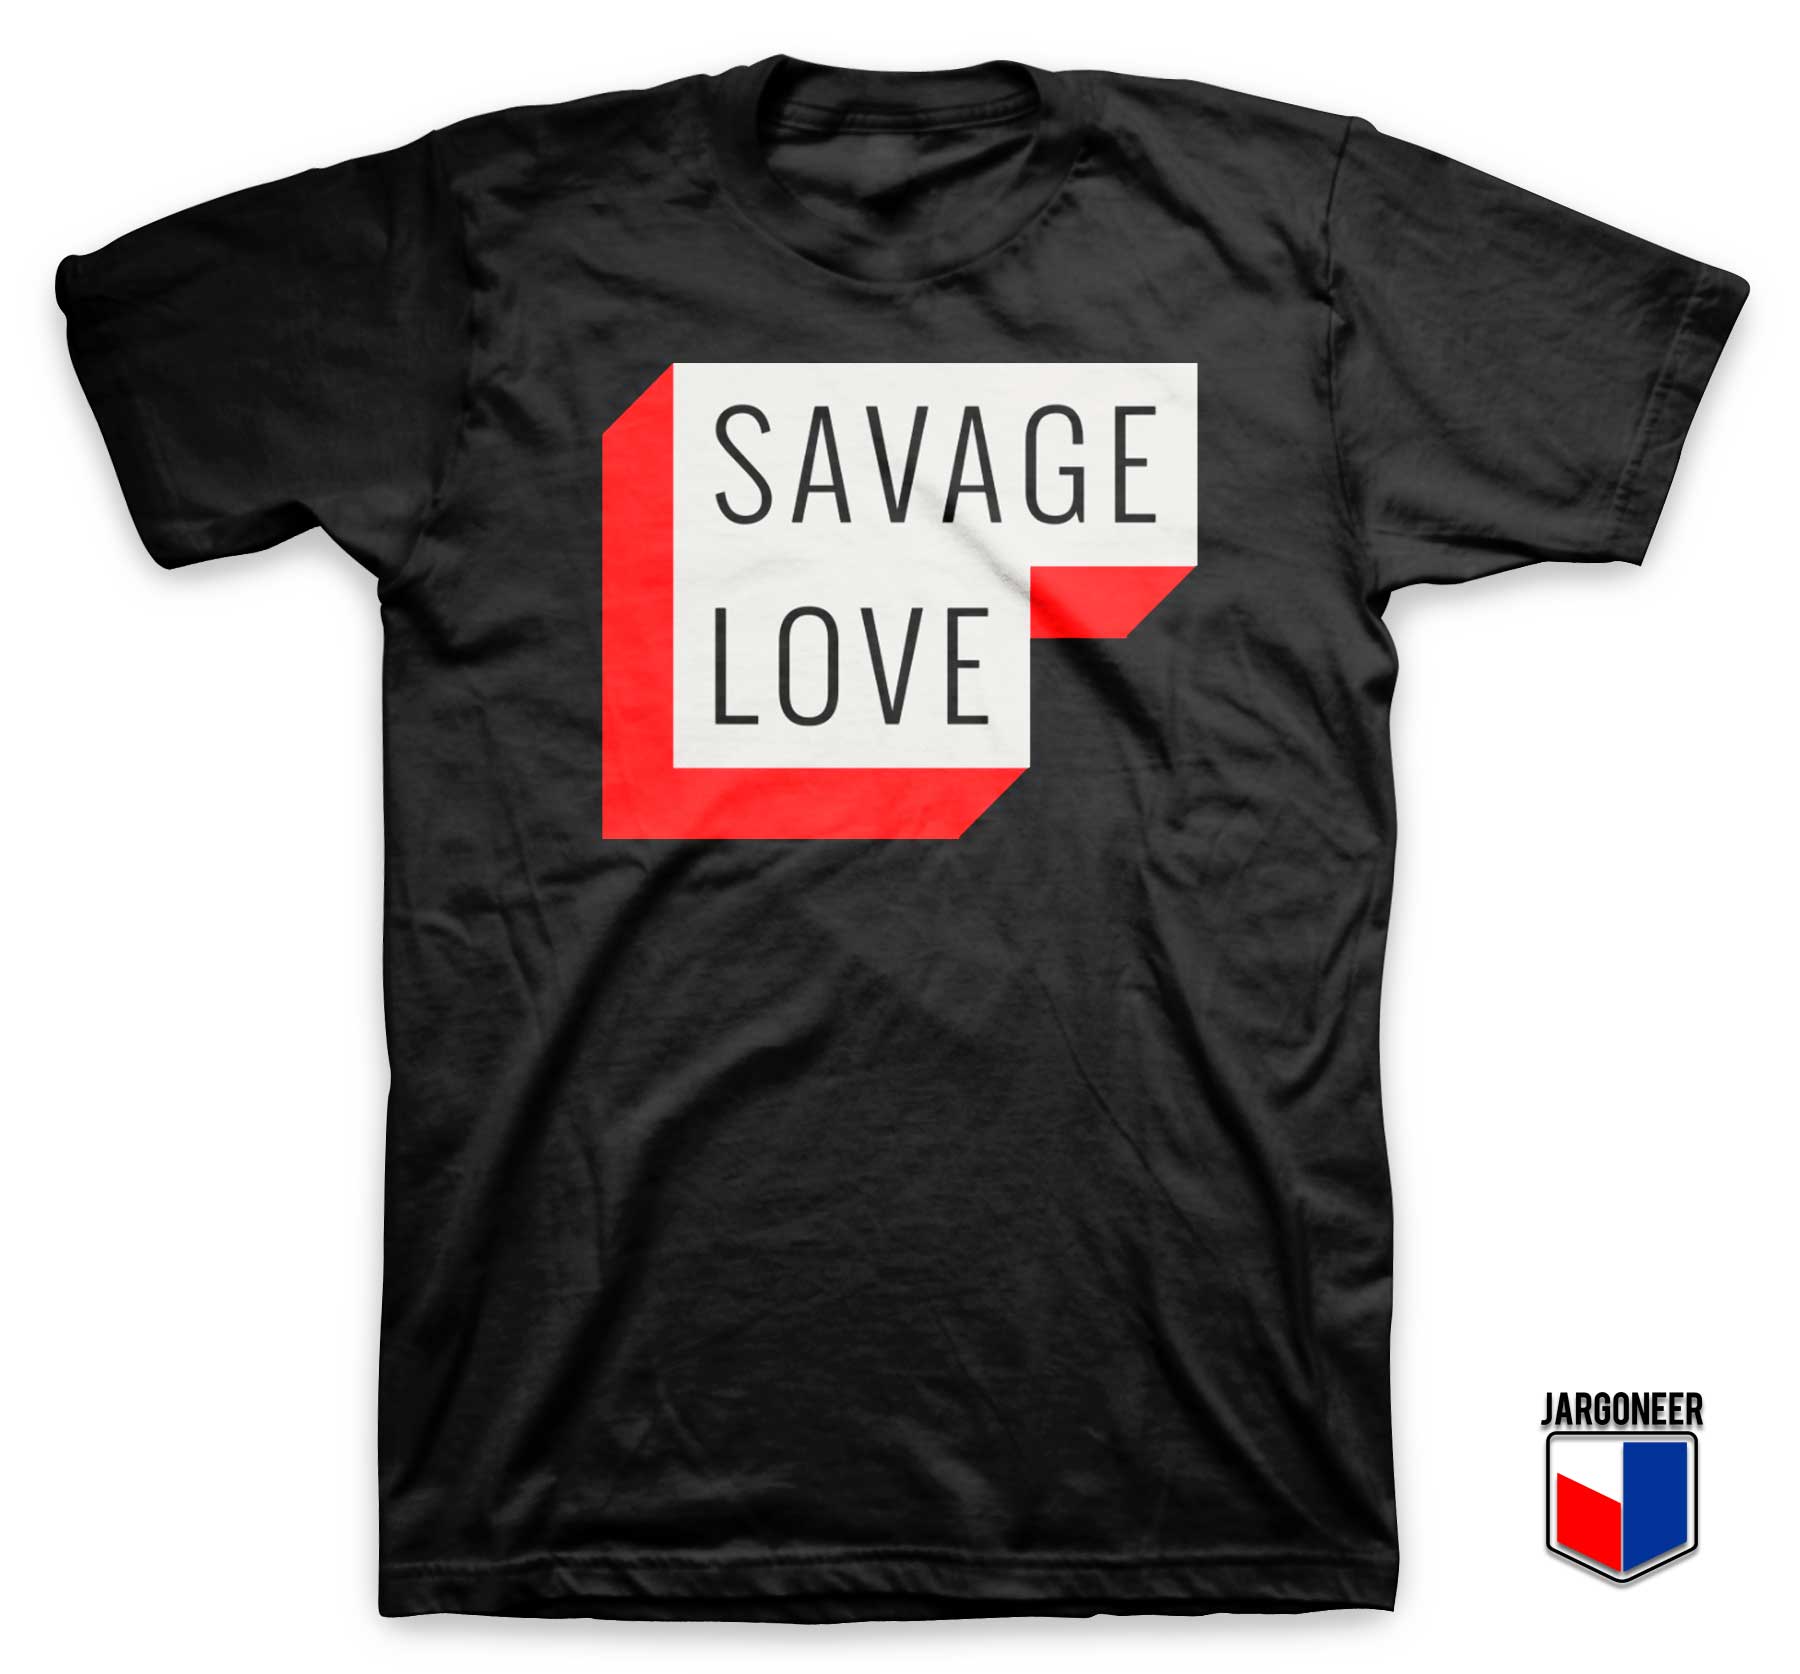 Savage Love T Shirt - Shop Unique Graphic Cool Shirt Designs